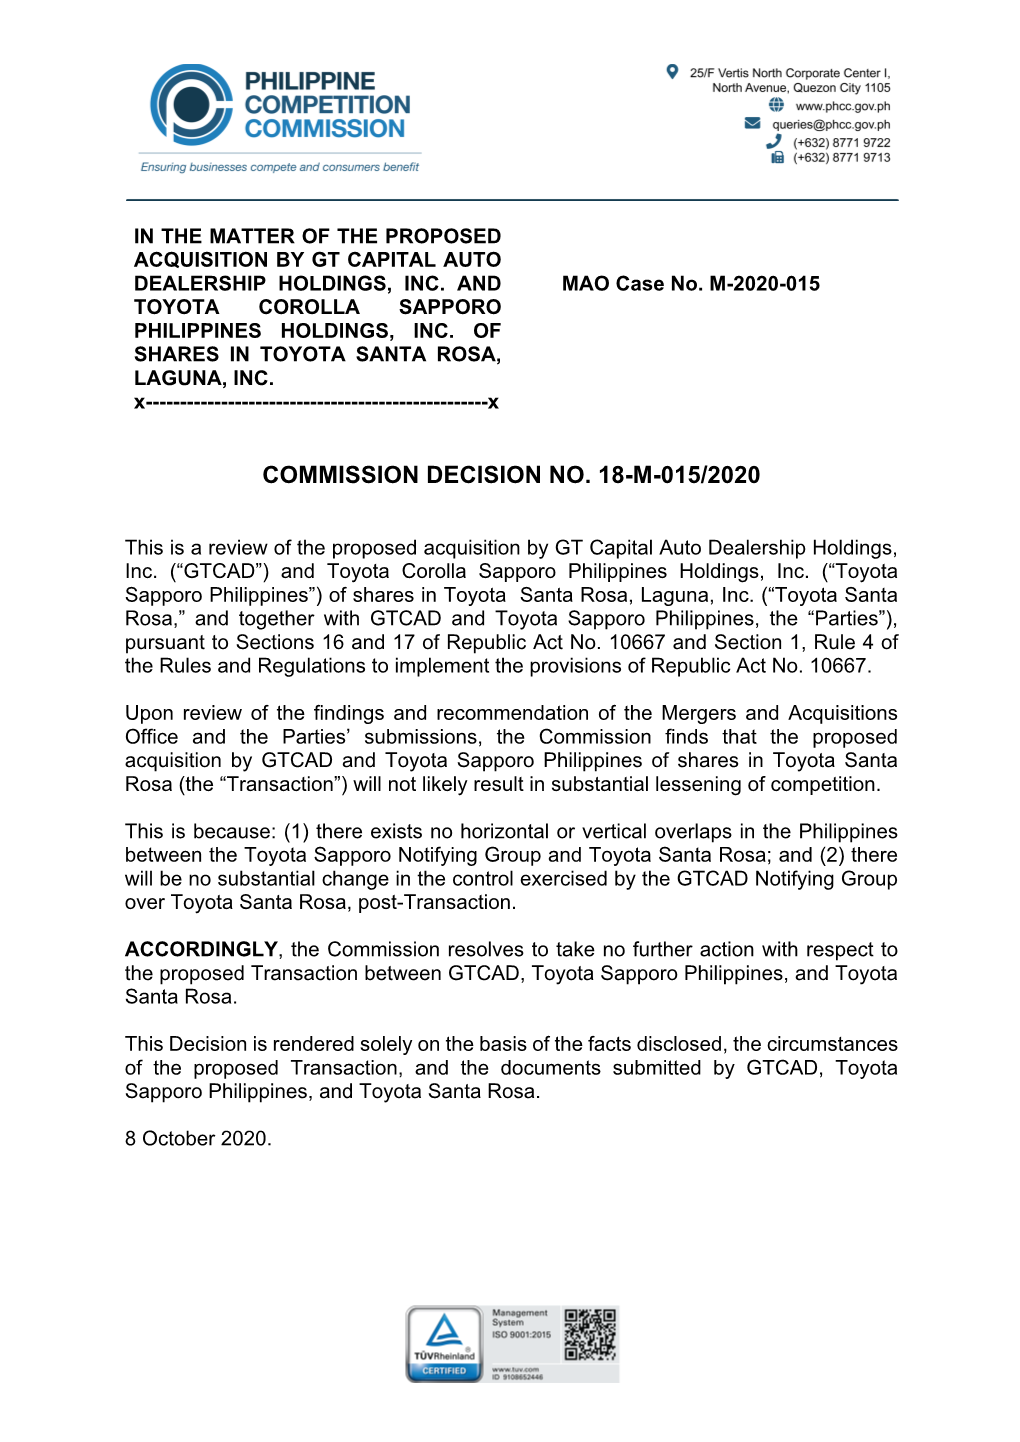 Commission Decision No. 18-M-015/2020